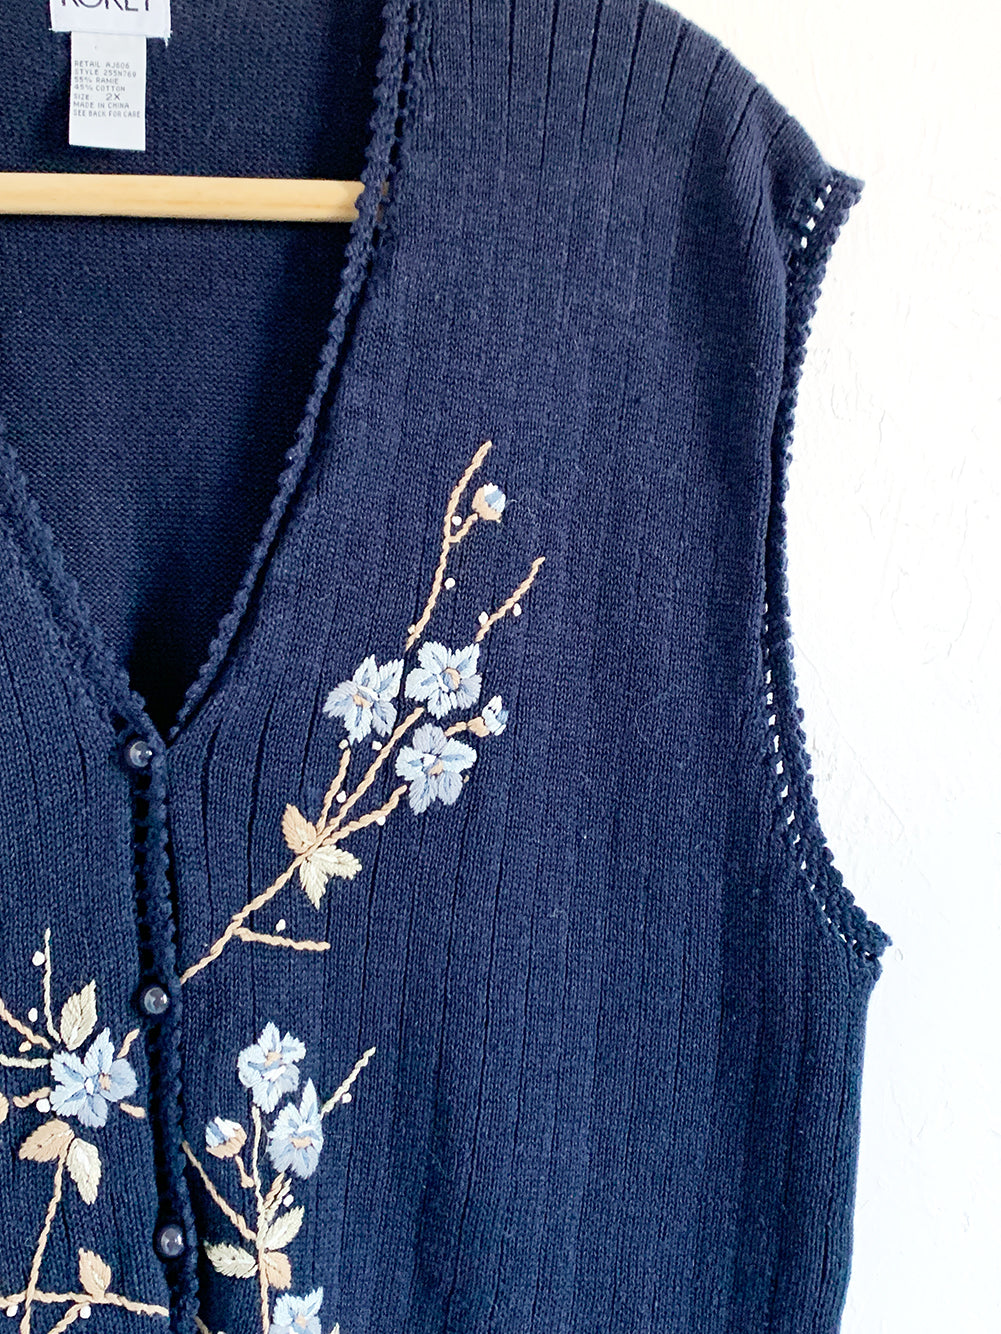 KORET Floral Embroidered Sweater Vest